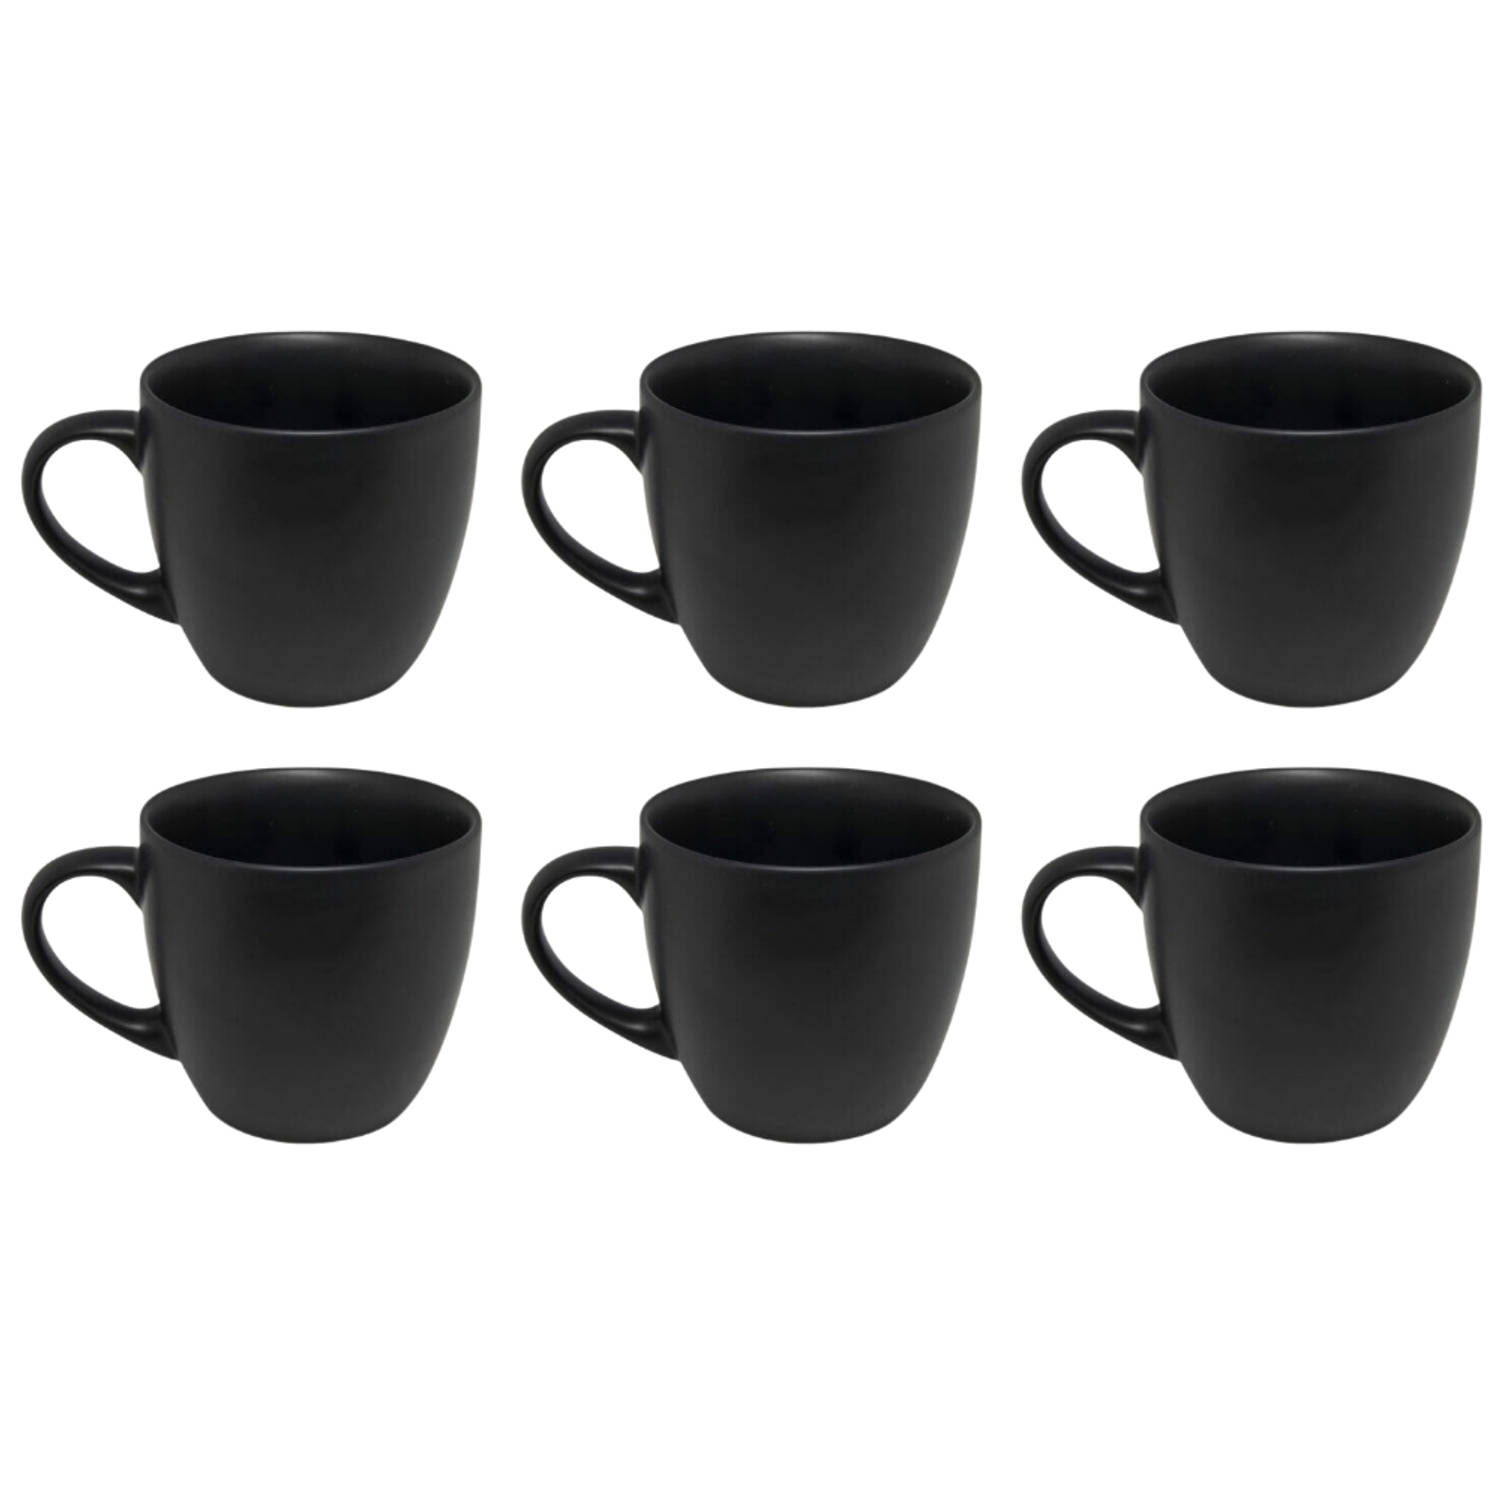 OTIX Koffiekopjes - Set van 6 - Koffietassen - Zwart - Mat - 240ml